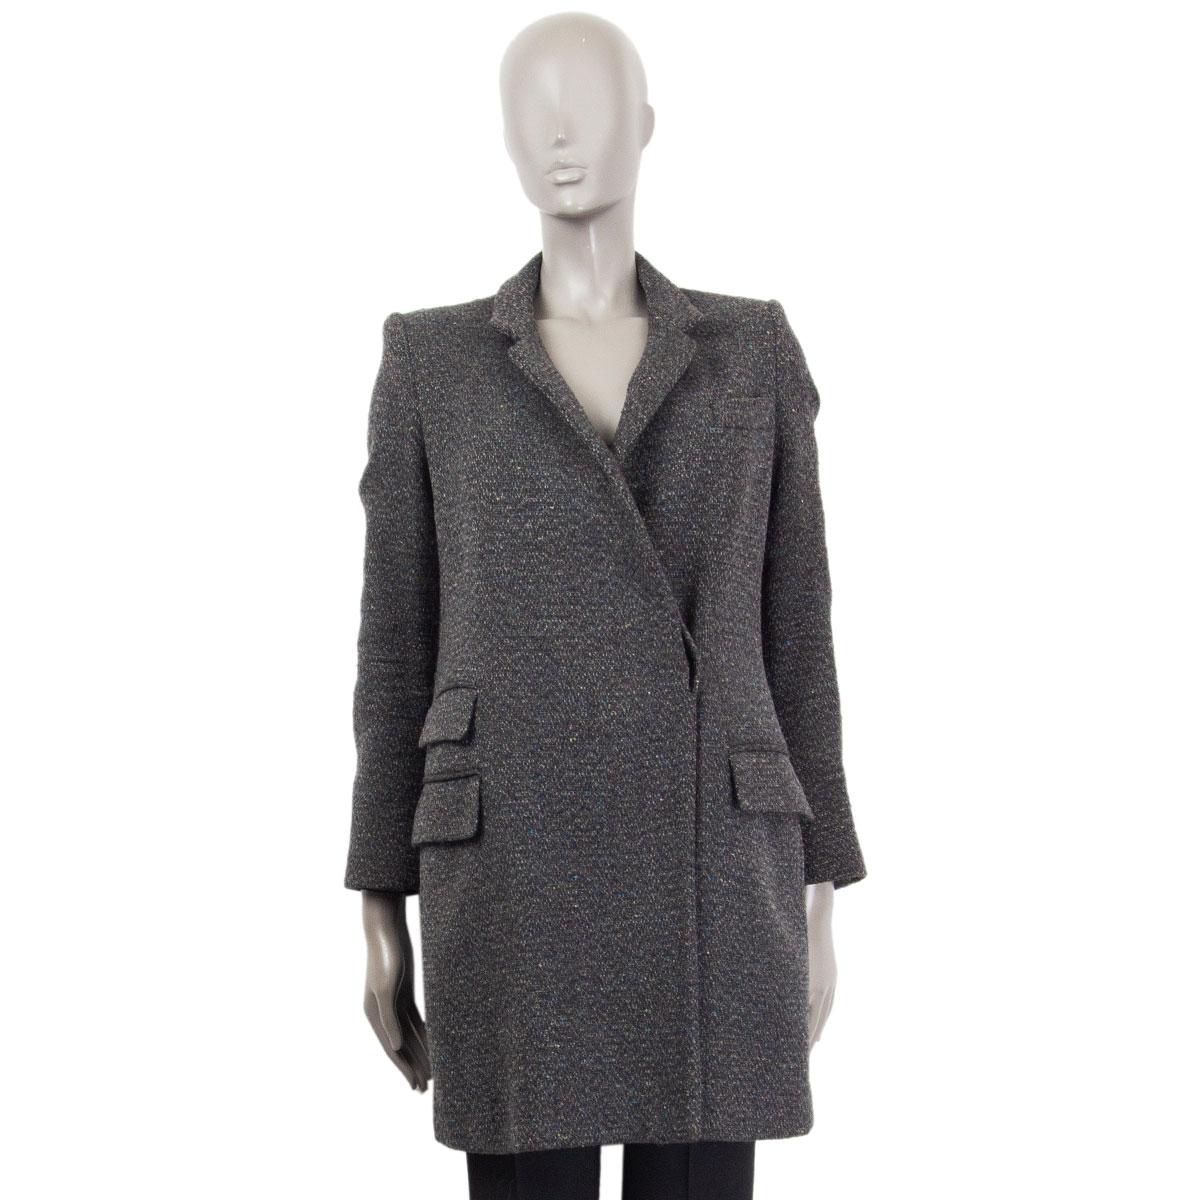 Veste manteau STELLA MCCARTNEY en laine gris foncé et multicolore, 38 XS